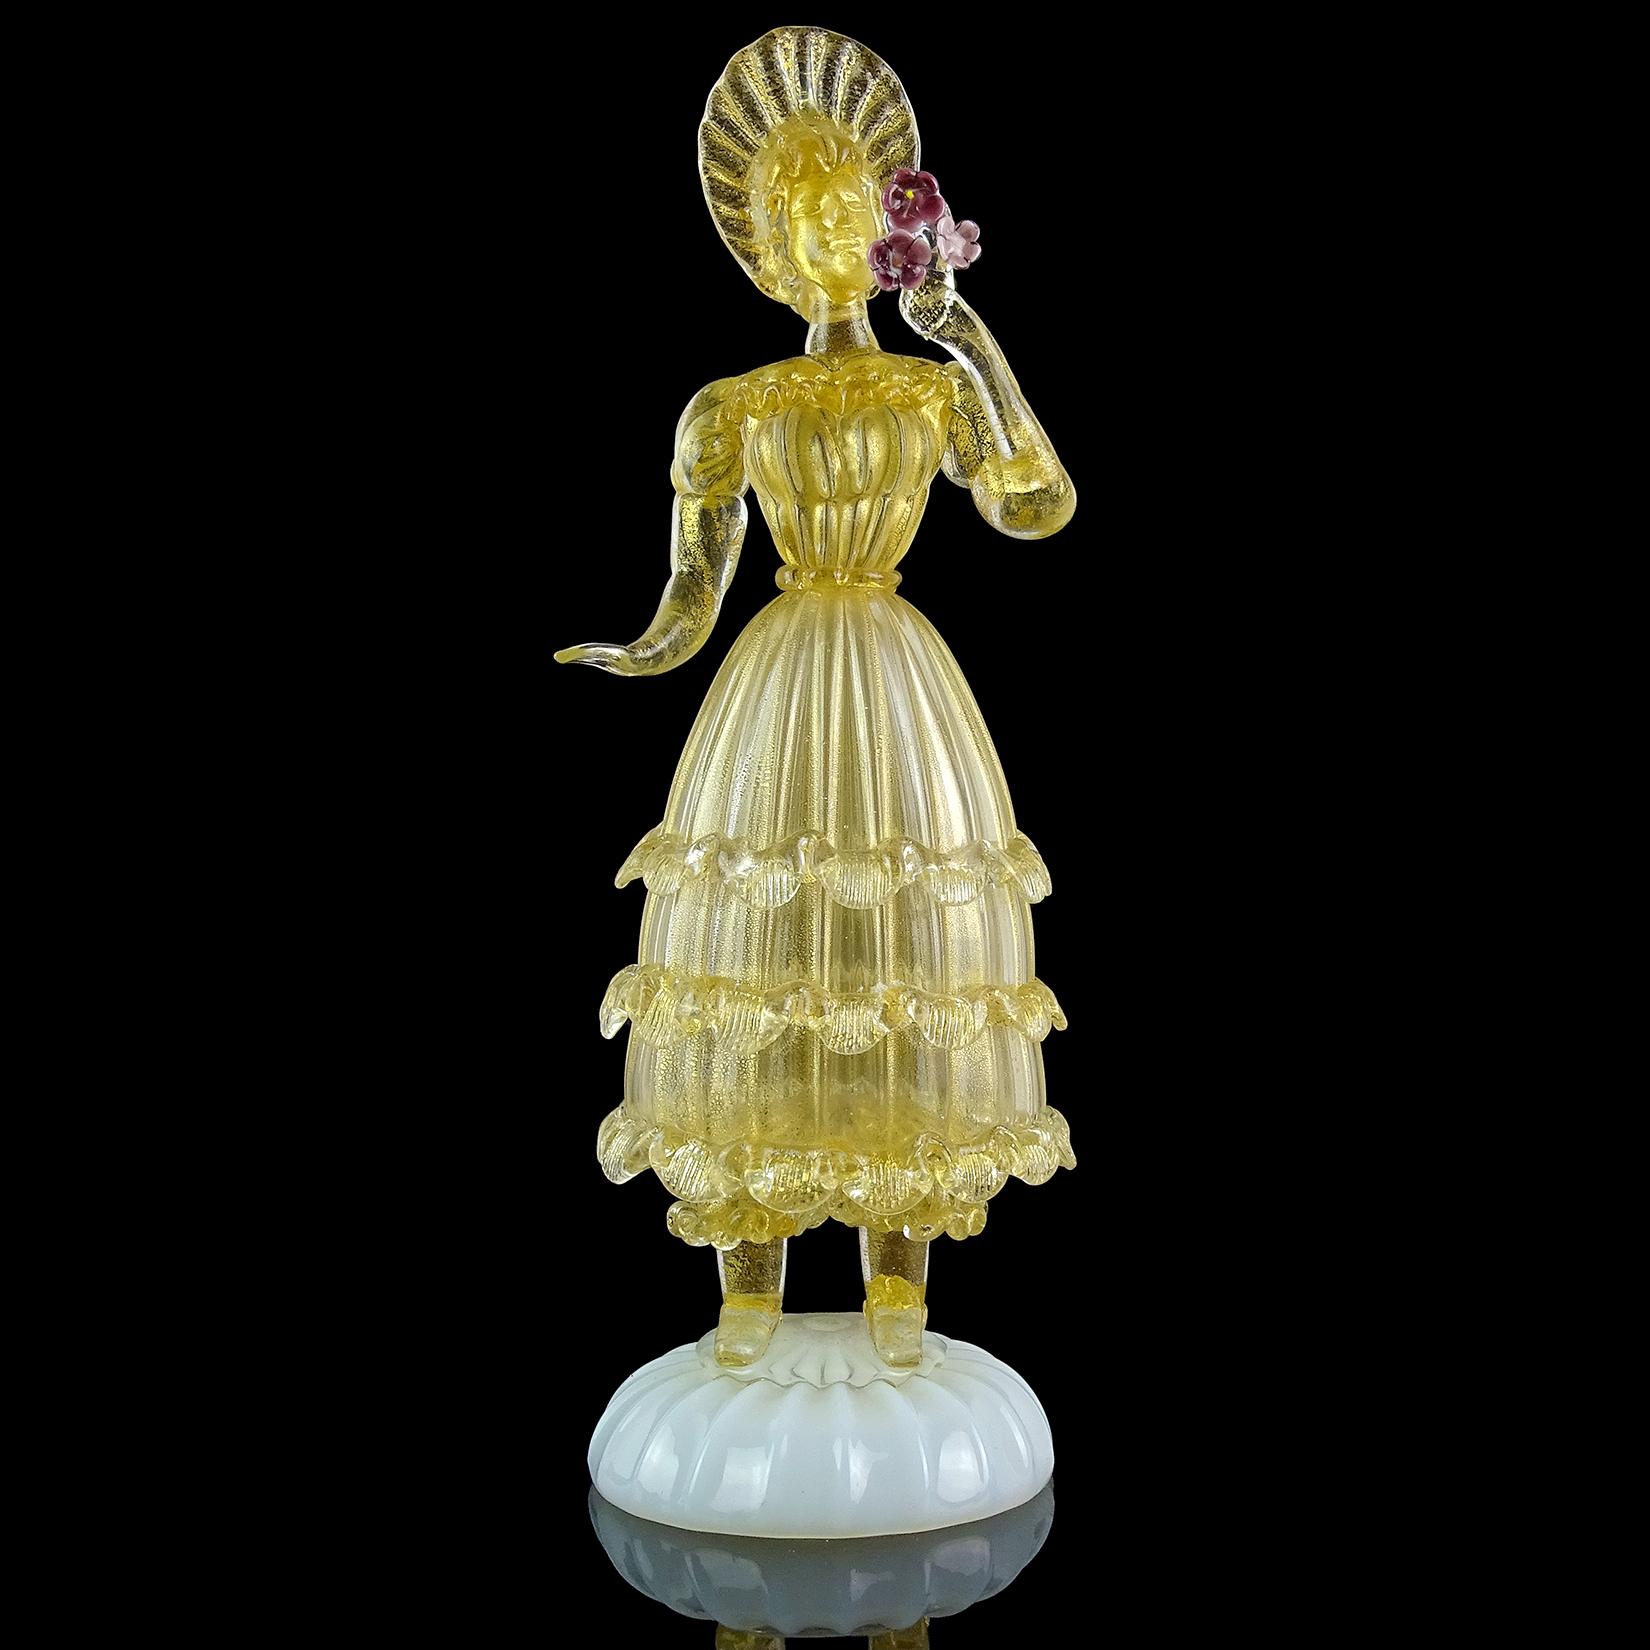 Superbe grand verre d'art italien vintage de Murano soufflé à la main, avec des mouchetures d'or sur une base opale, représentant une femme reine tenant des fleurs violettes. Elle porte une robe très ornée, avec beaucoup de volants, et une coiffe